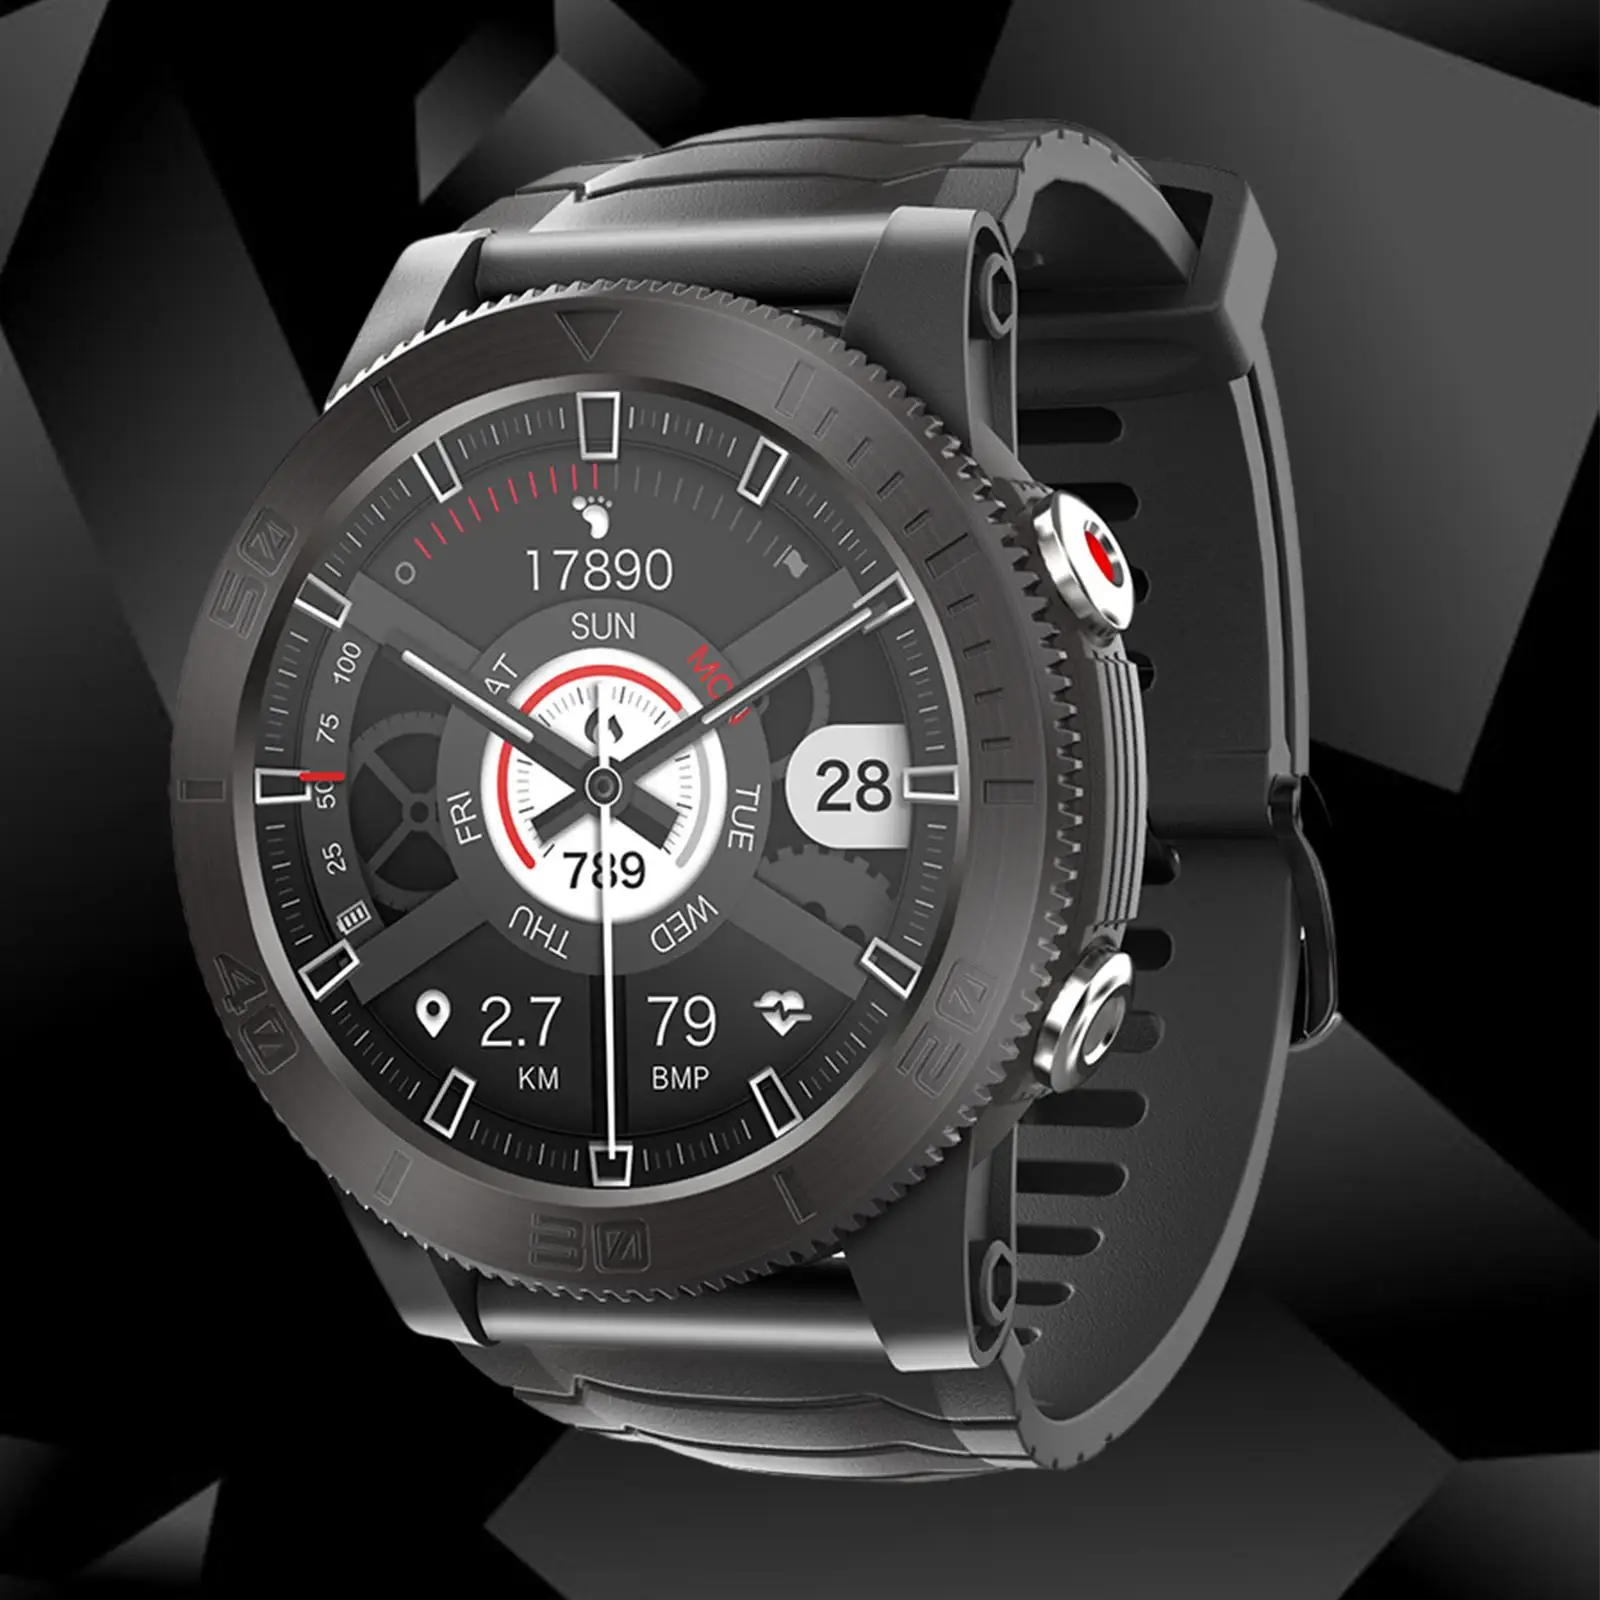 GPS Smart Watch Waterproof 1.32inch Screen Compass Multifunction for Outdoor